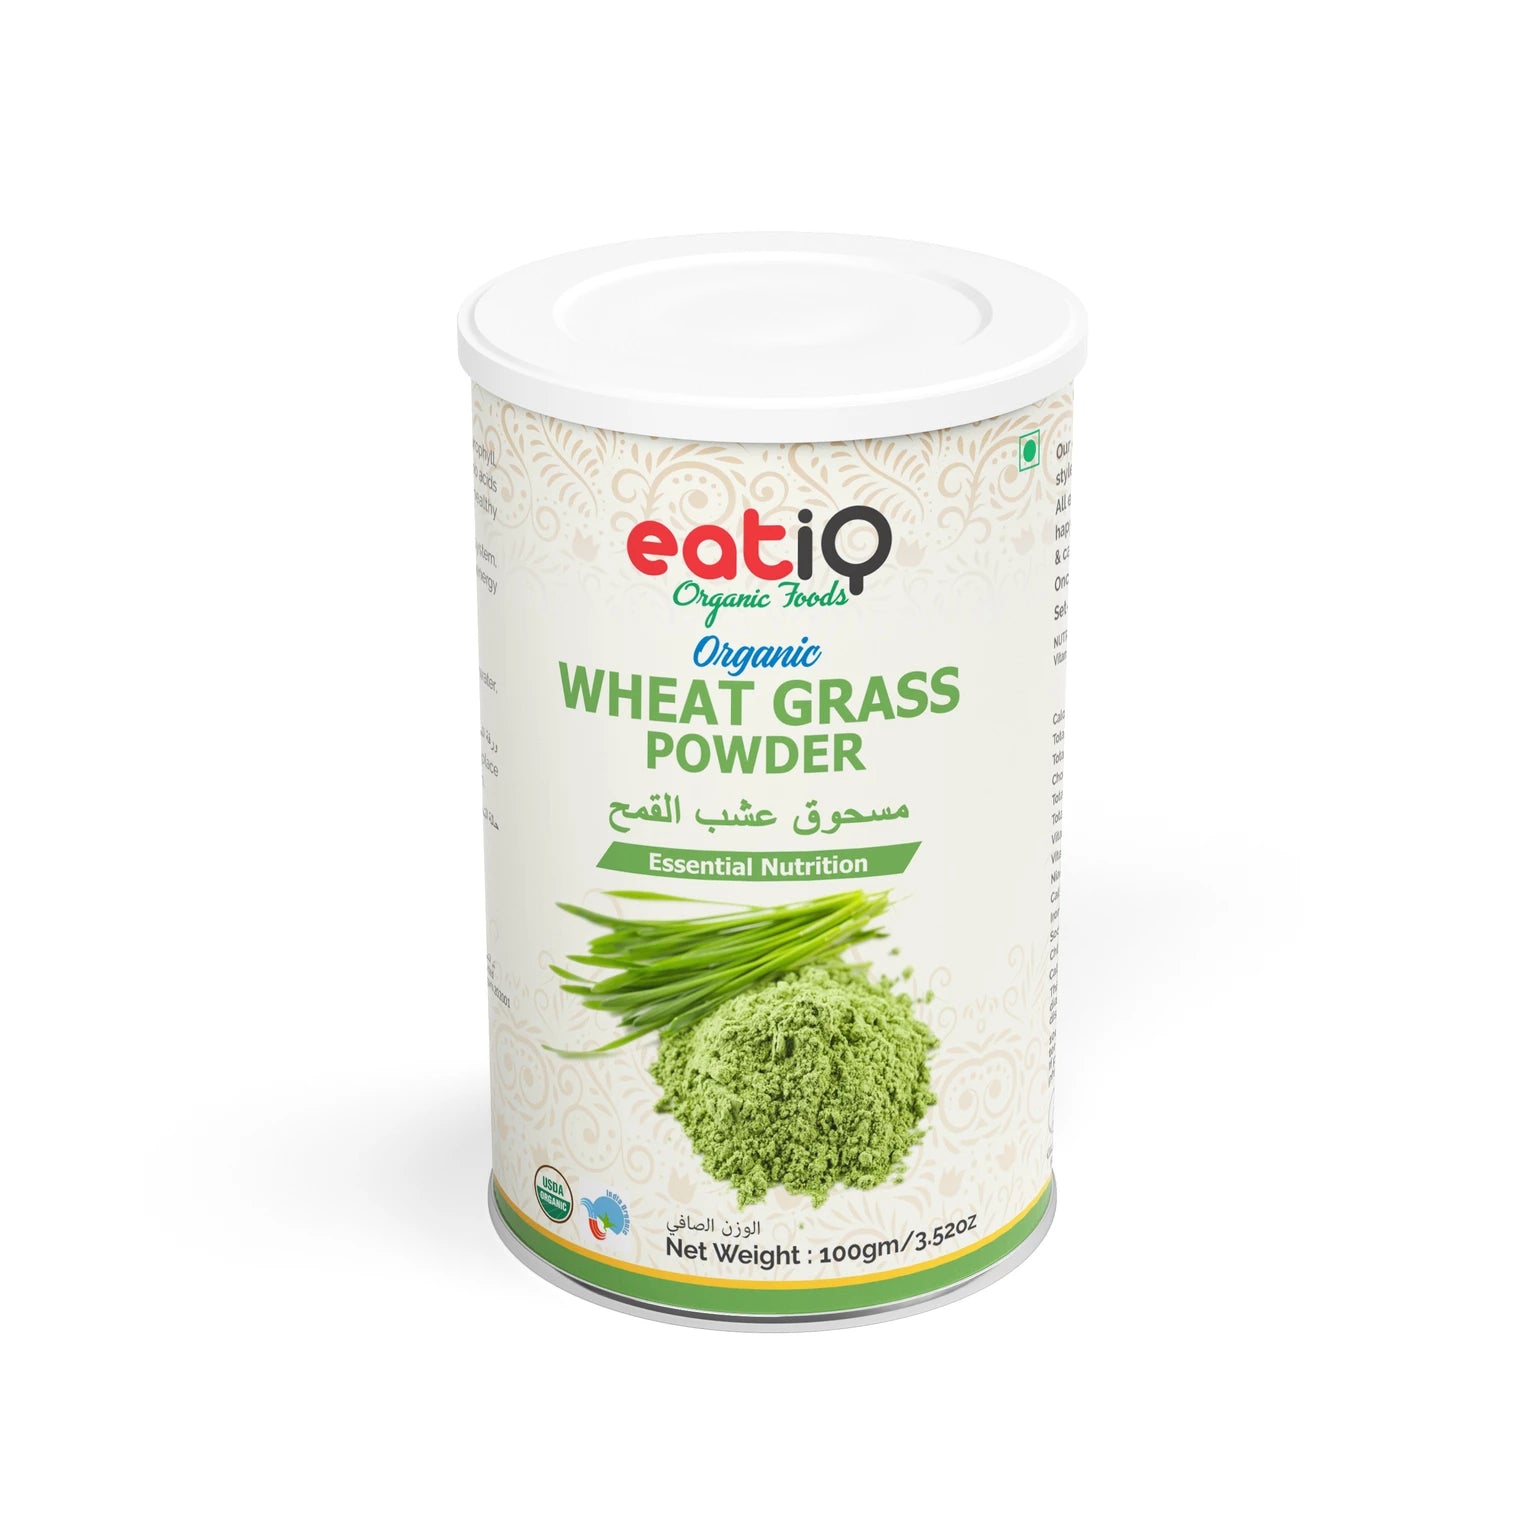 EATIQ Organic Wheatgrass Powder, 100g